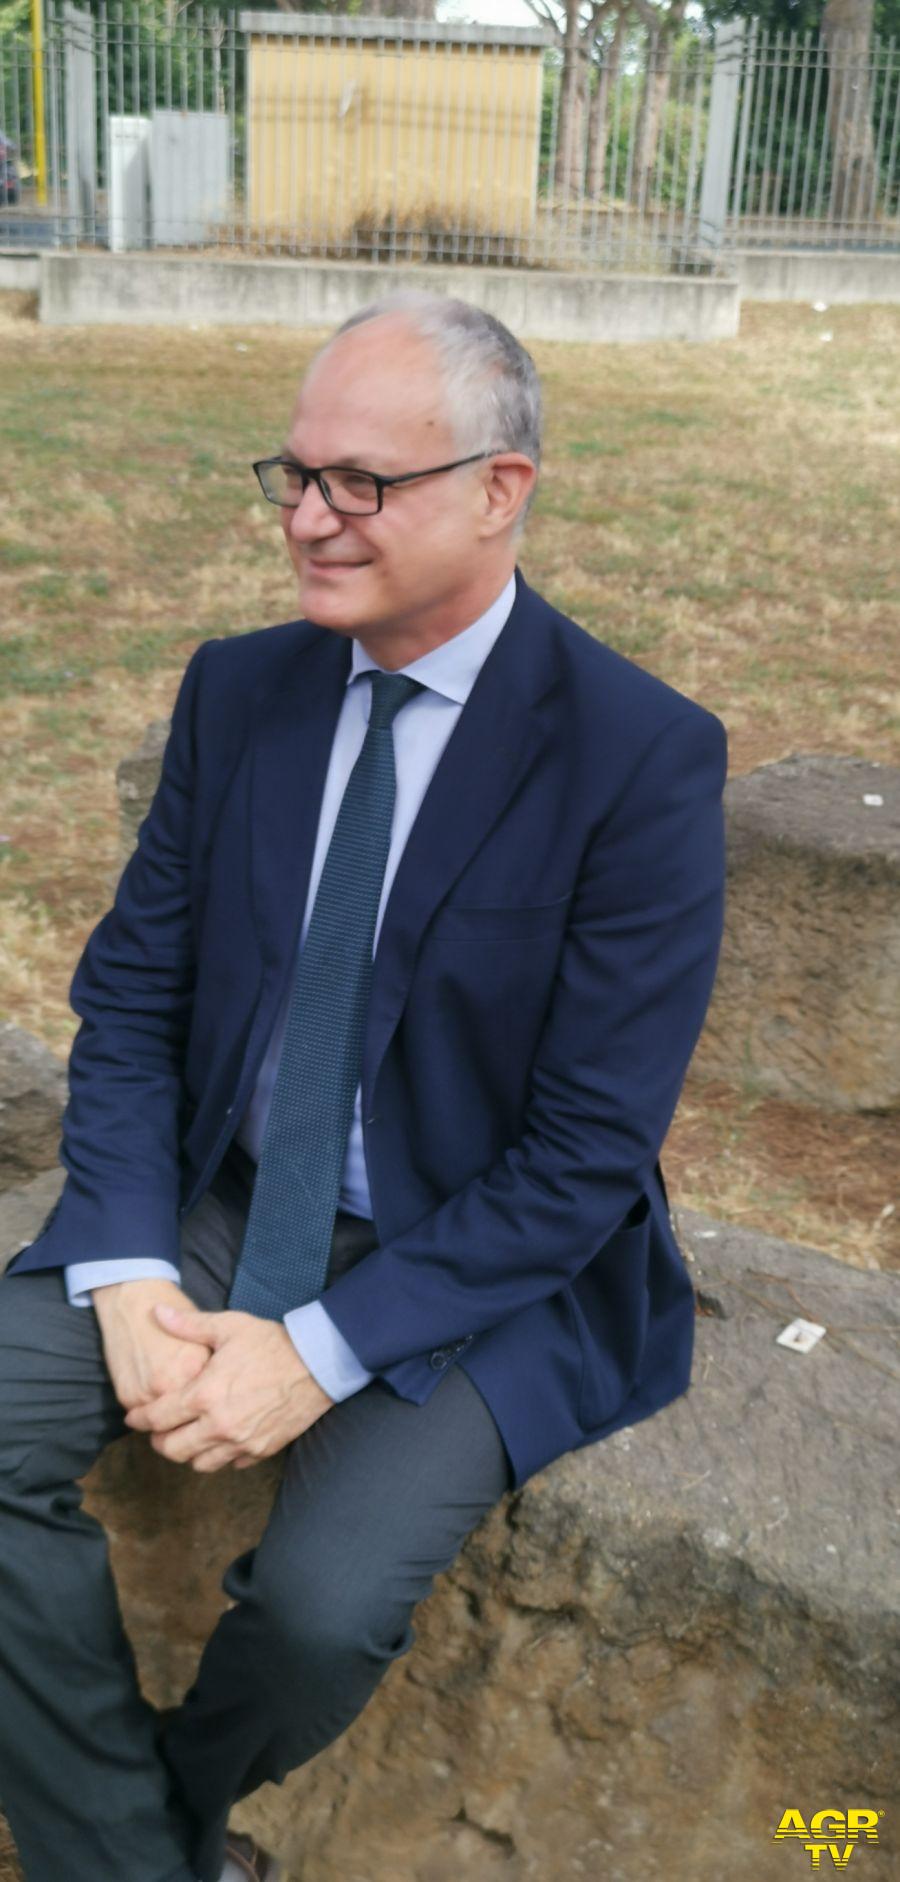 Ostia Antica, Roberto Gualtieri incontra i cittadini, candidatura Unesco? Una priorità